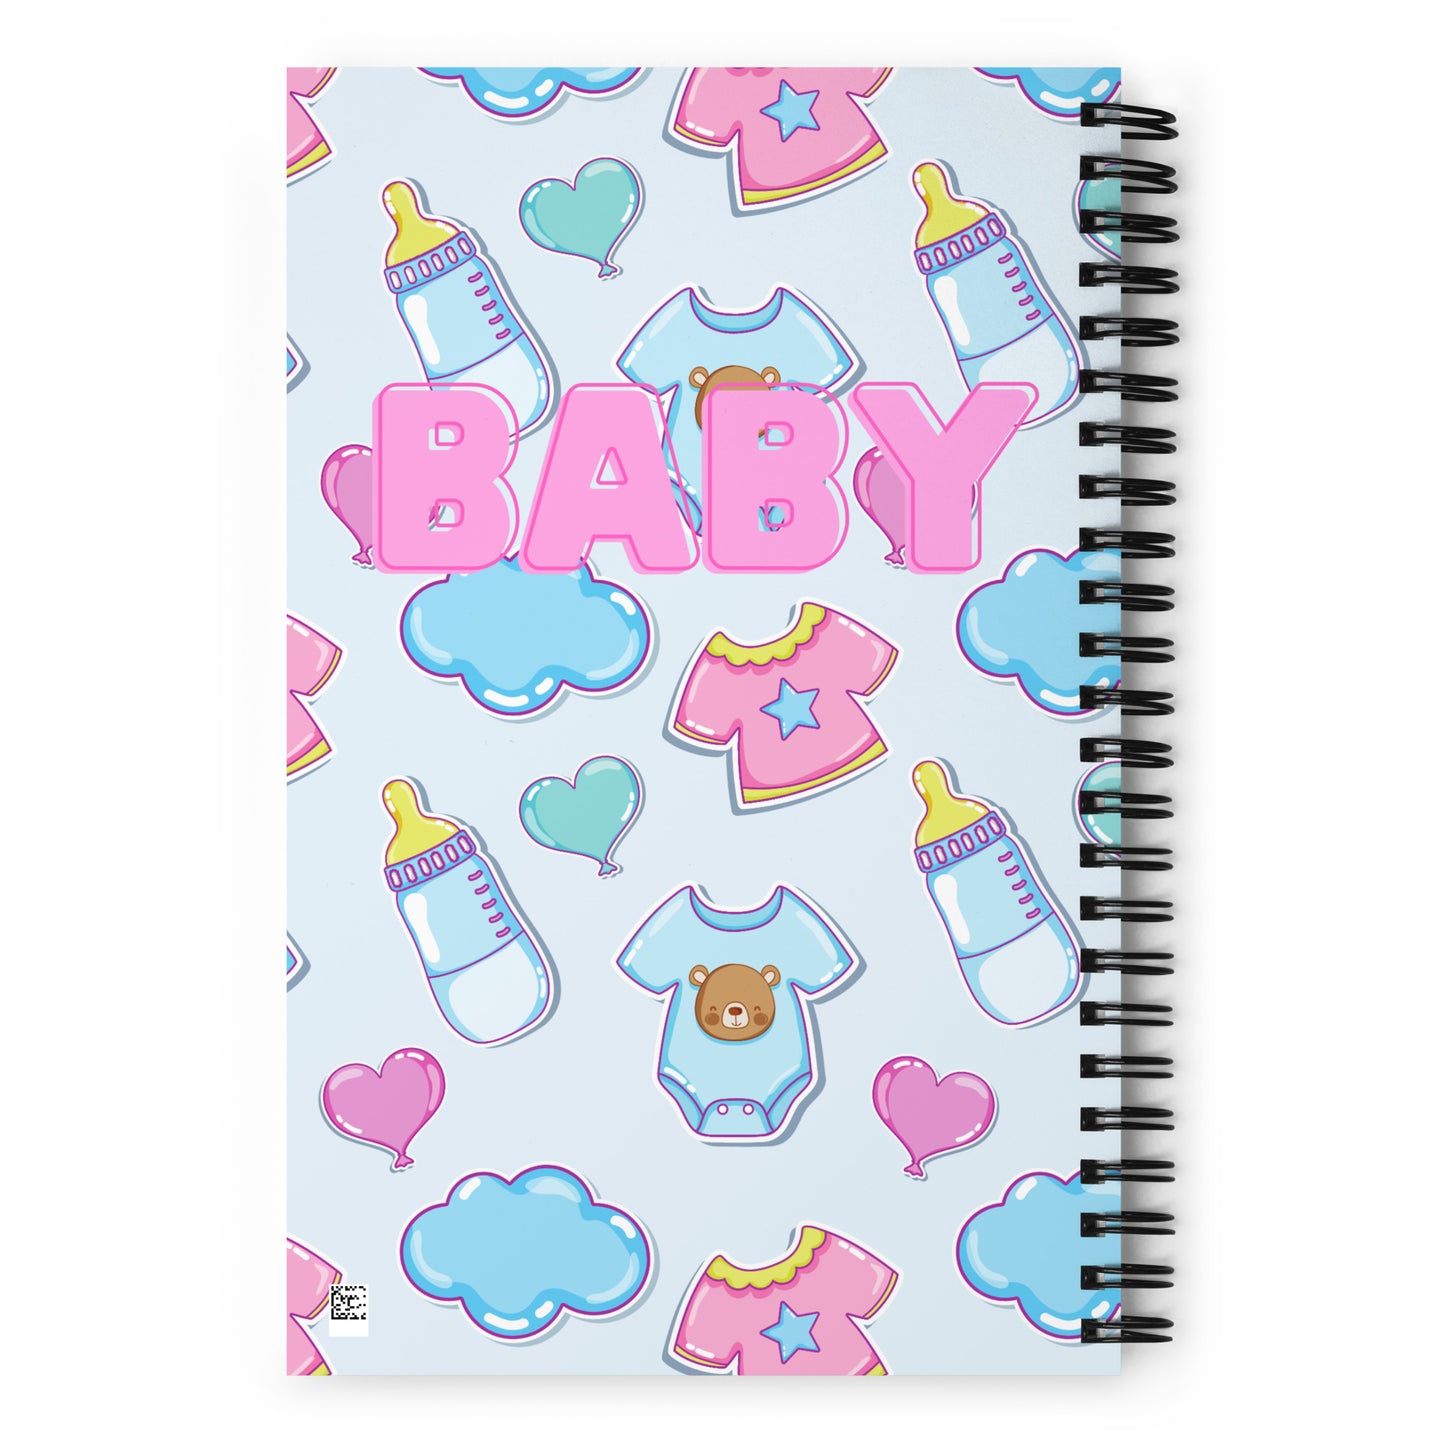 ABDL Baby Spiral Notebook